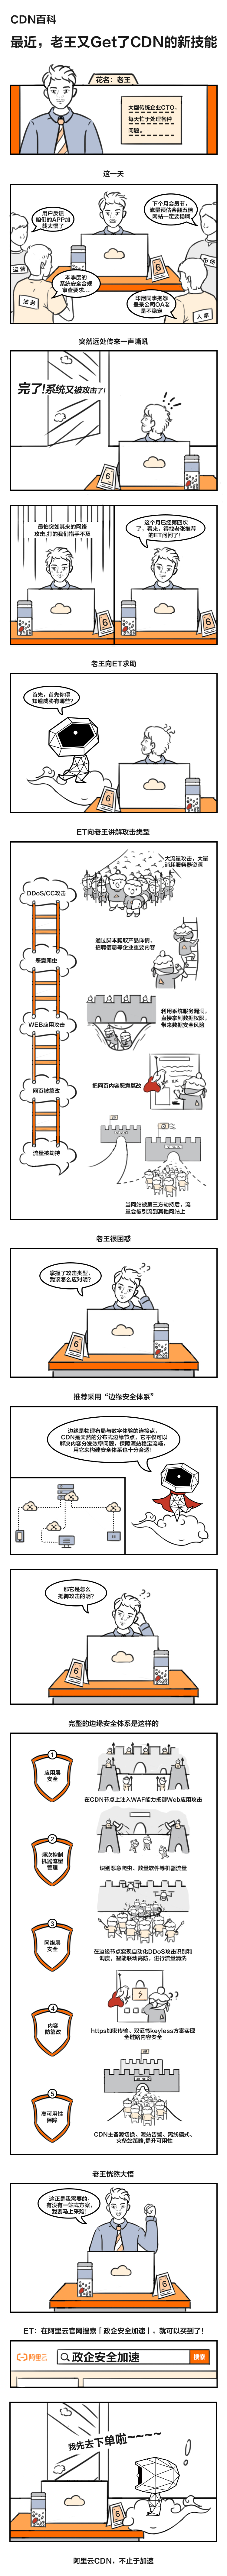 CDN百科-安全漫画-0622最终版.jpg